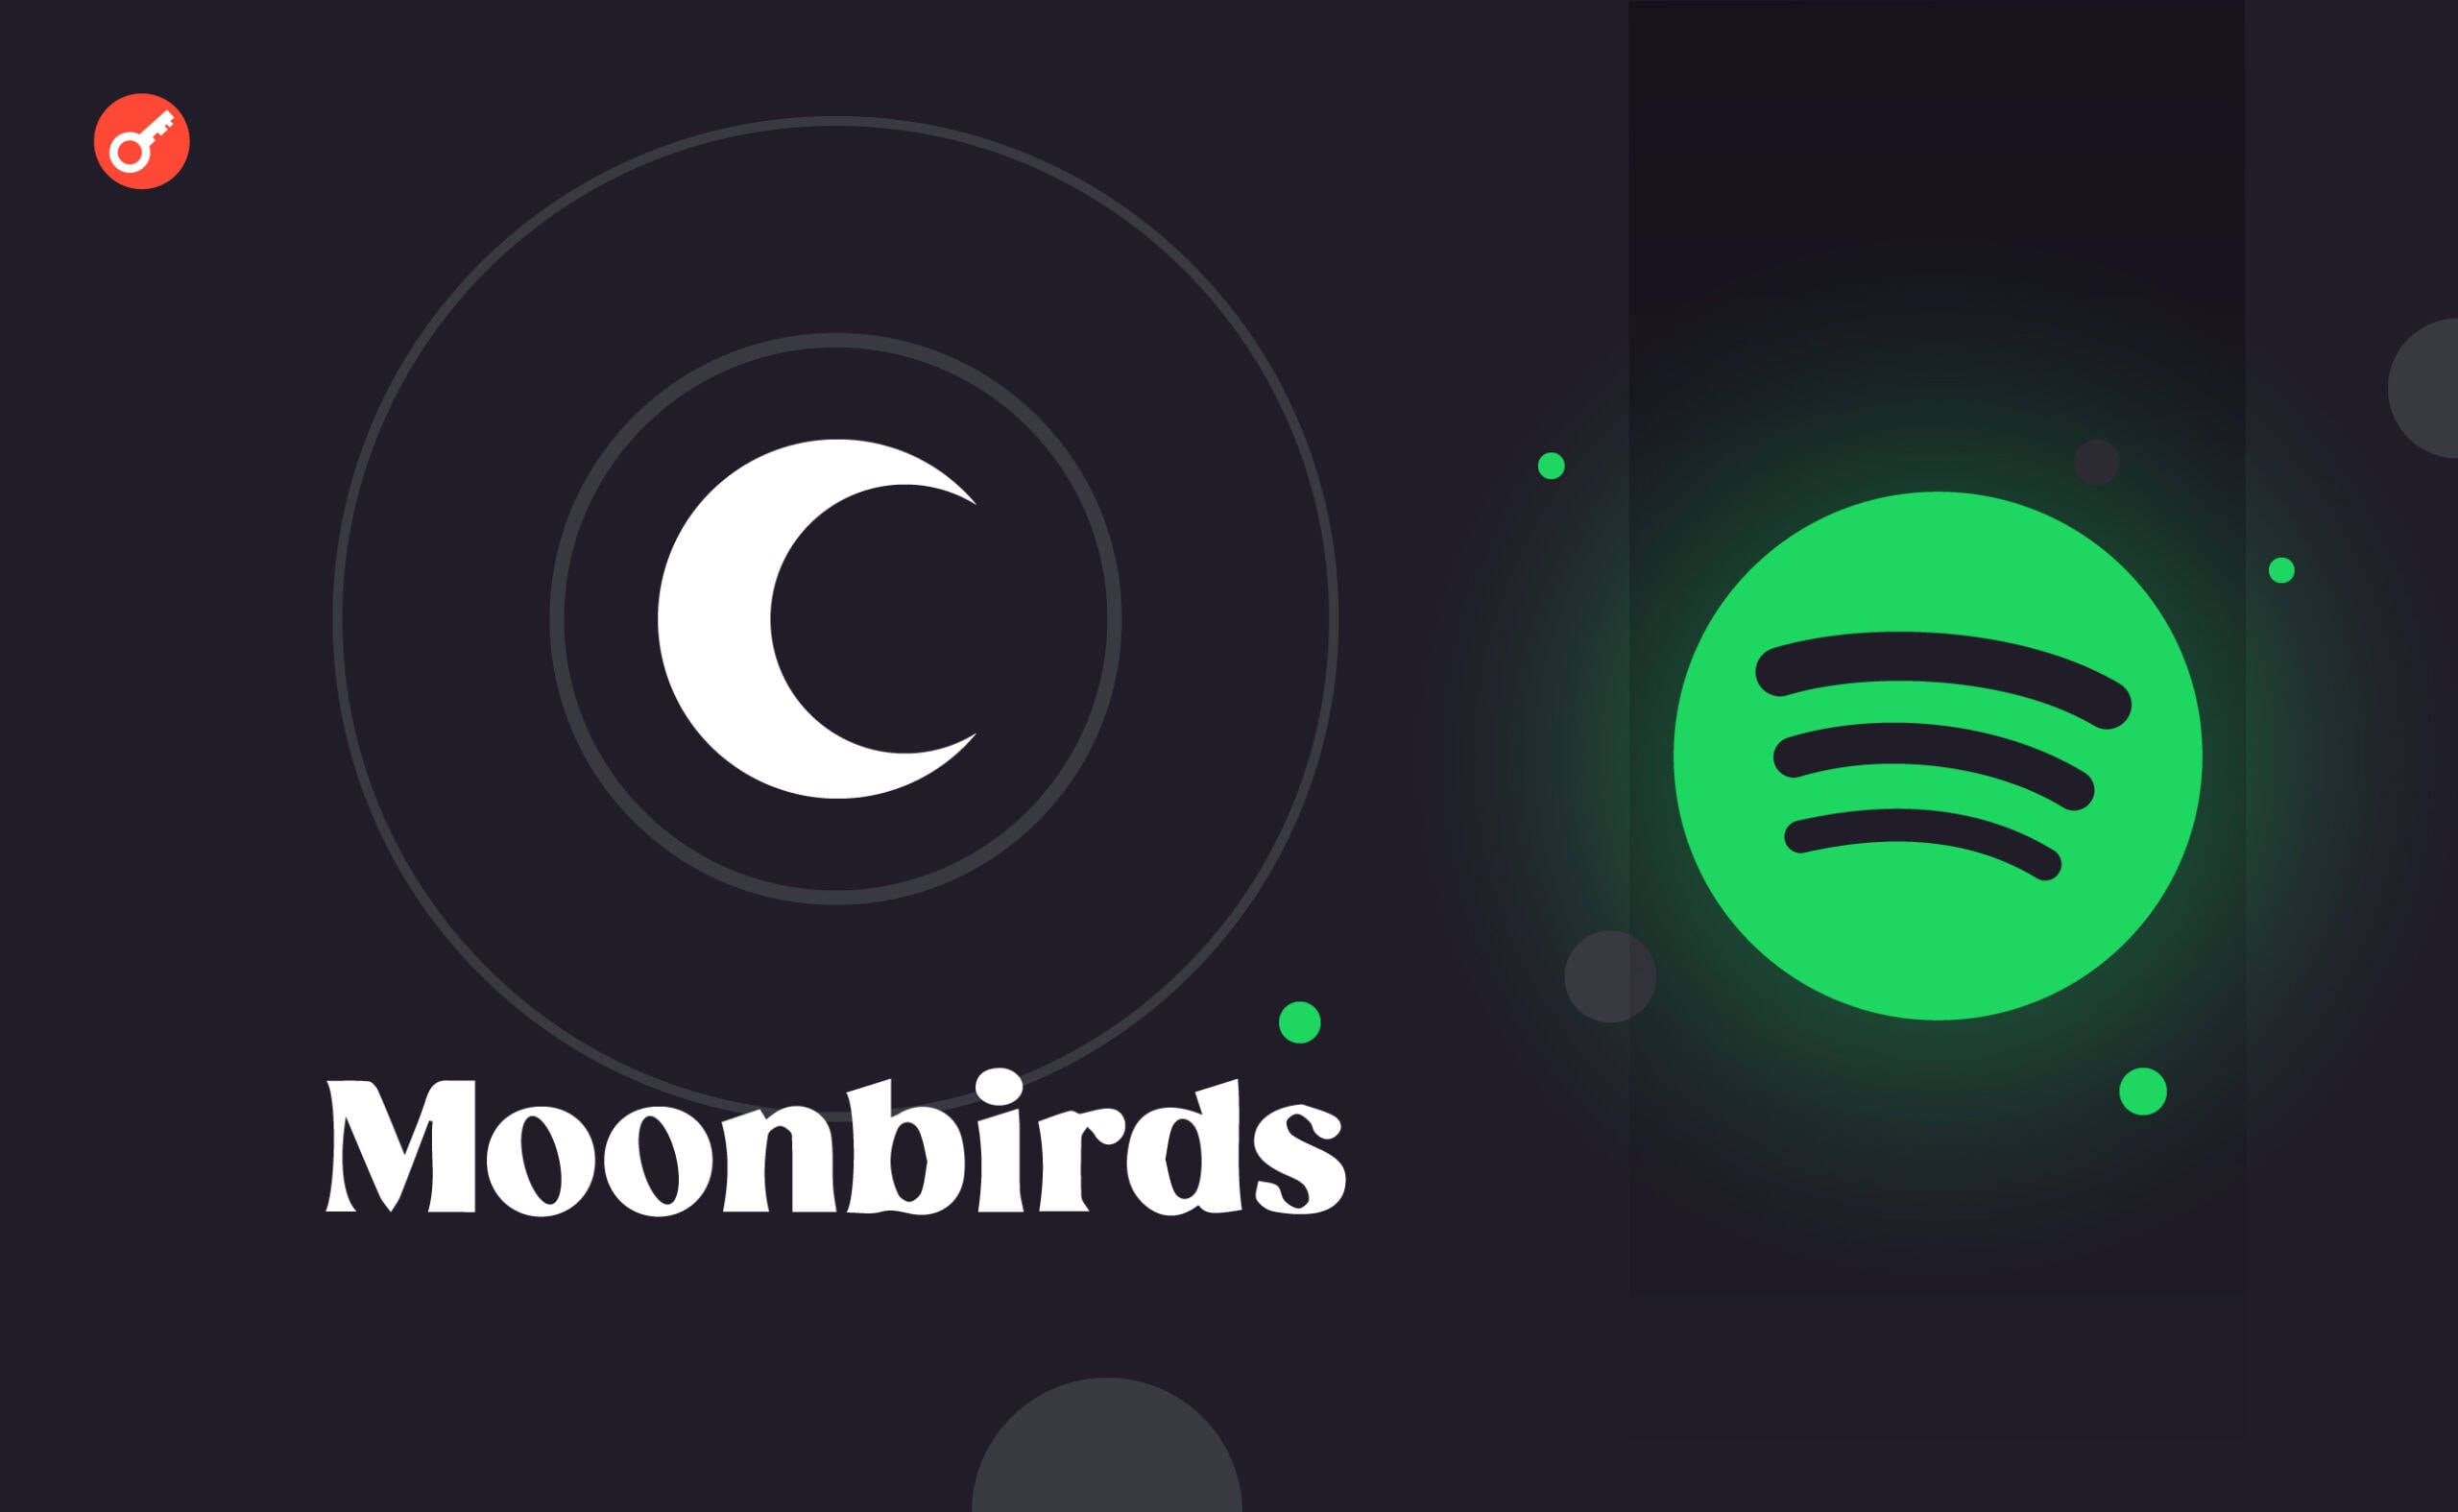 Moonbirds запустил NFT-плейлист на Spotify. Заглавный коллаж новости.